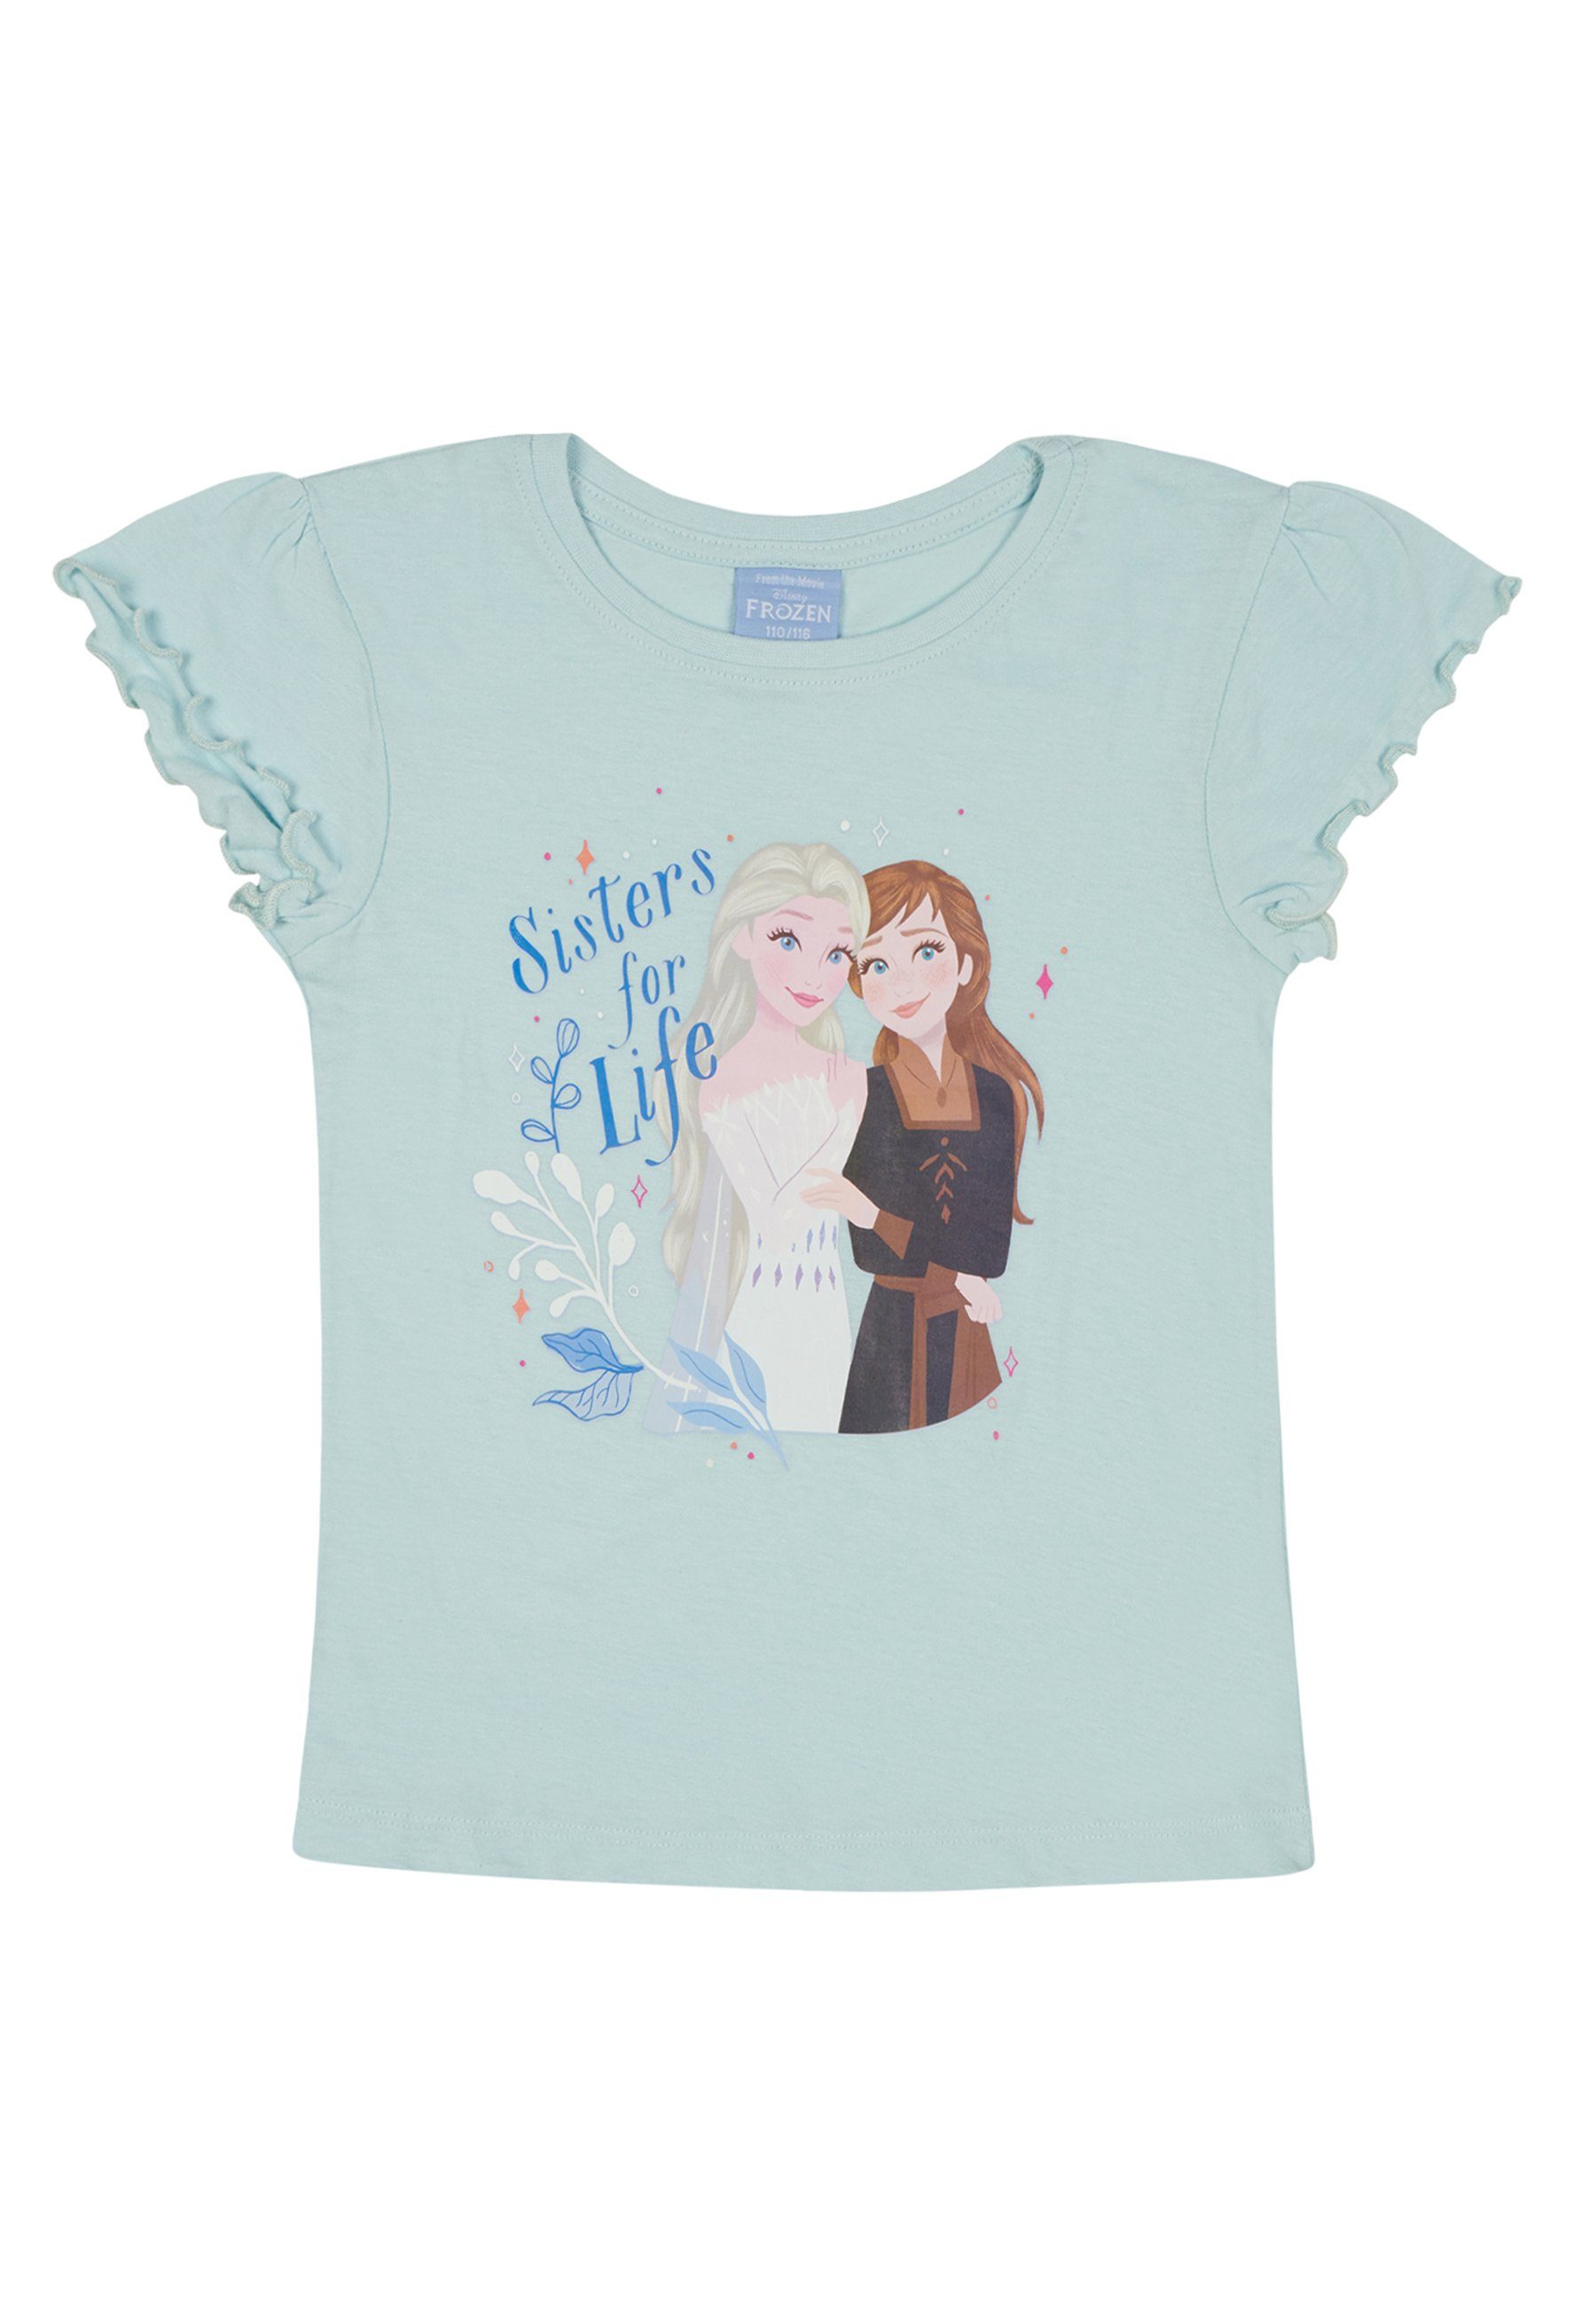 ONOMATO! T-Shirt Frozen - Die Eiskönigin Mädchen T-Shirt Shirt Top Oberteil Elsa Anna